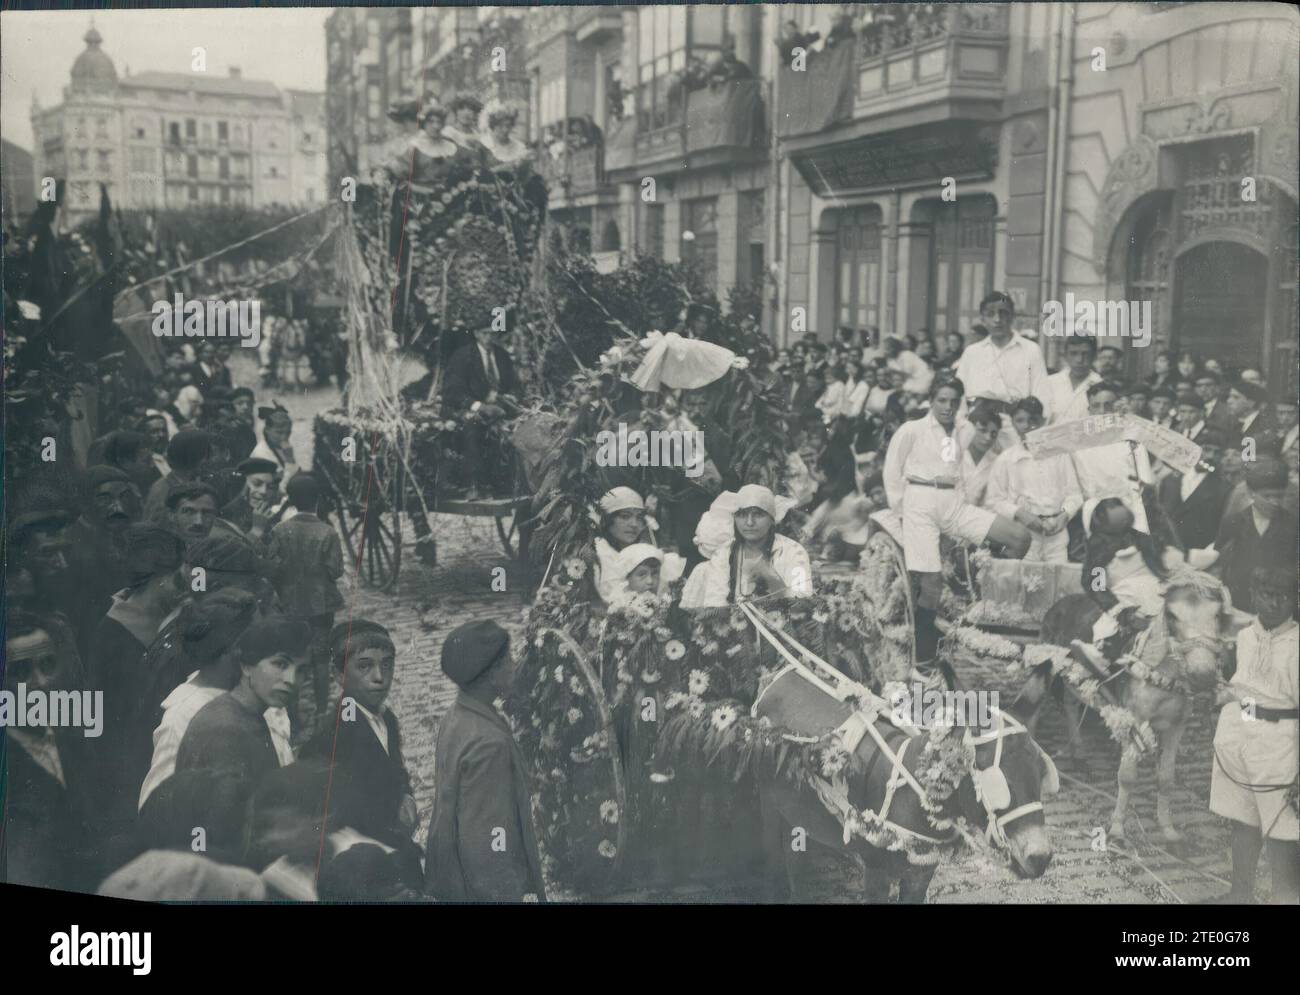 09/07/1919. Castro Urdiales. Schlacht der Blumen. Verdeckte Autos, die die drei ersten Preise gewannen. Quelle: Album / Archivo ABC / Juan Barrera Stockfoto